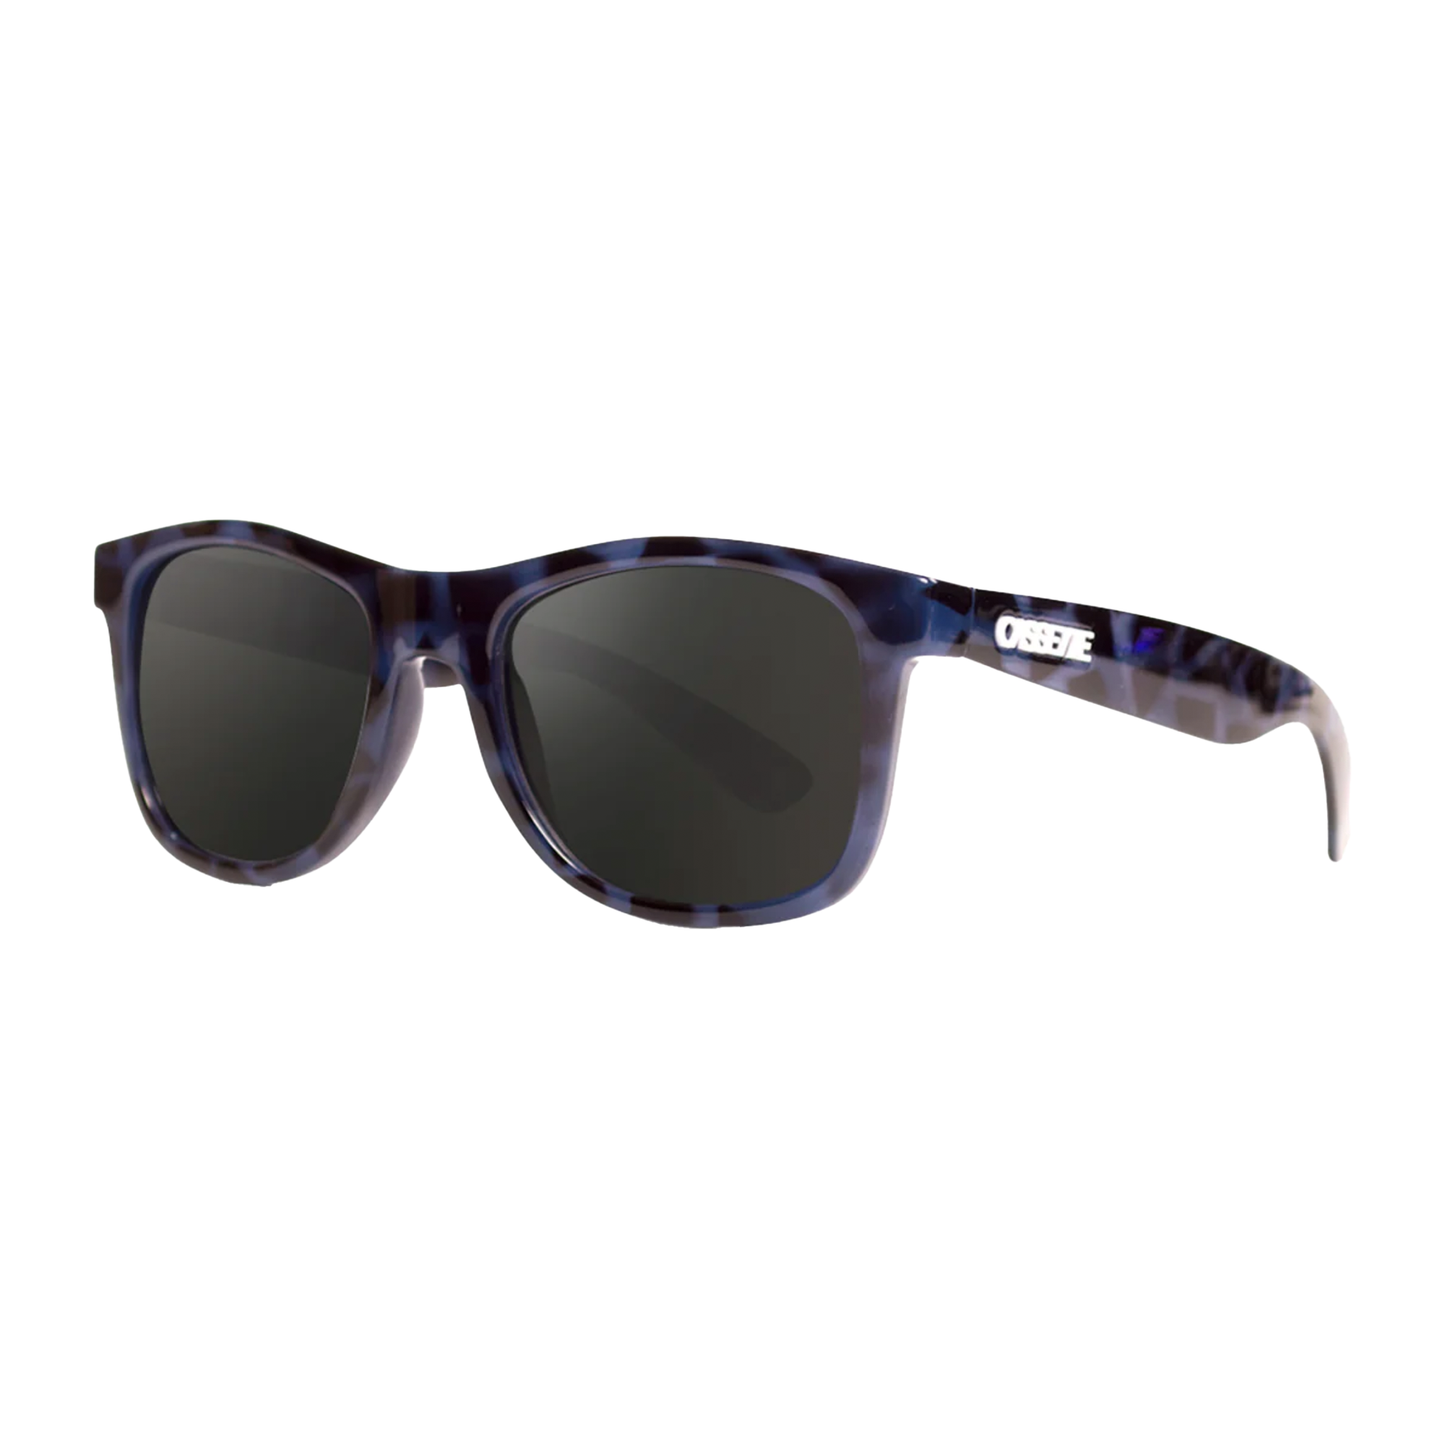 Cassette OGLX Sunglasses - Blue Tortoise / Smoke Lens